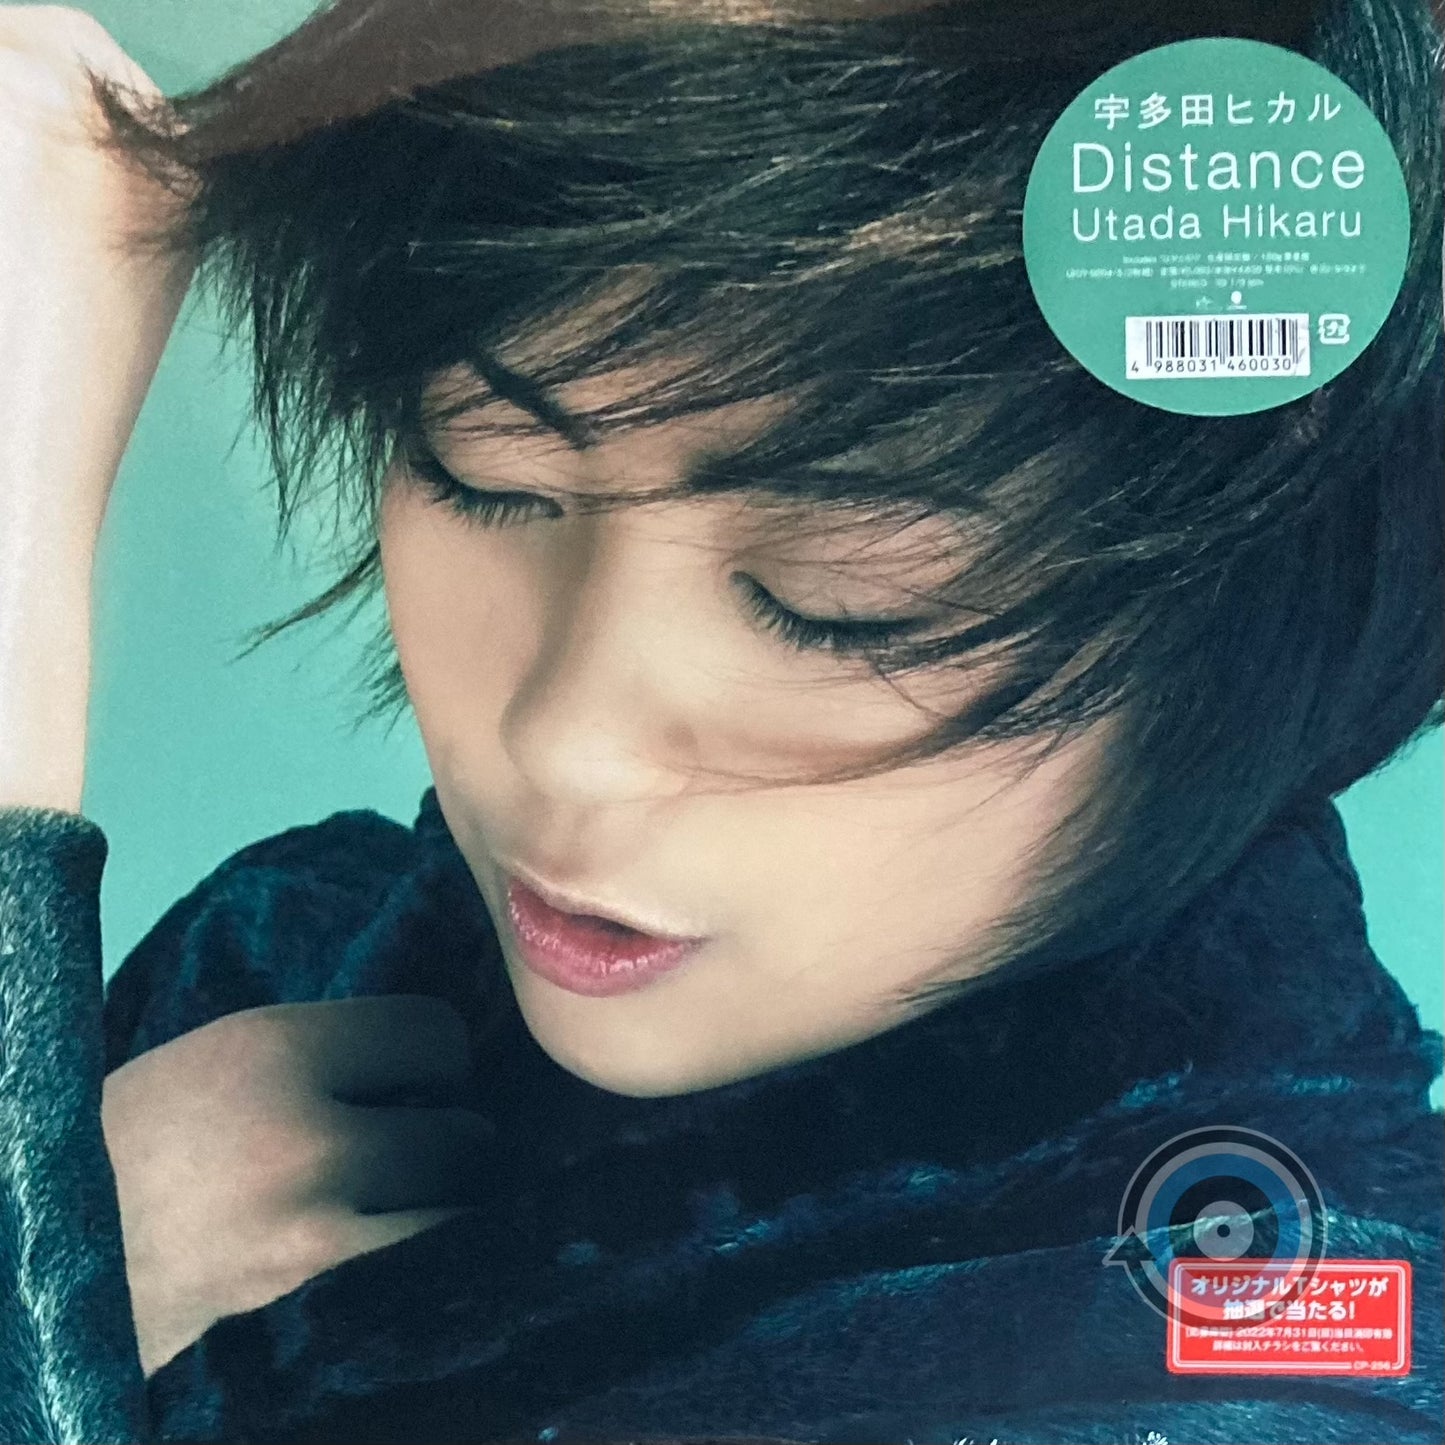 Utada Hikaru - Distance 2-LP (Limited Edition)